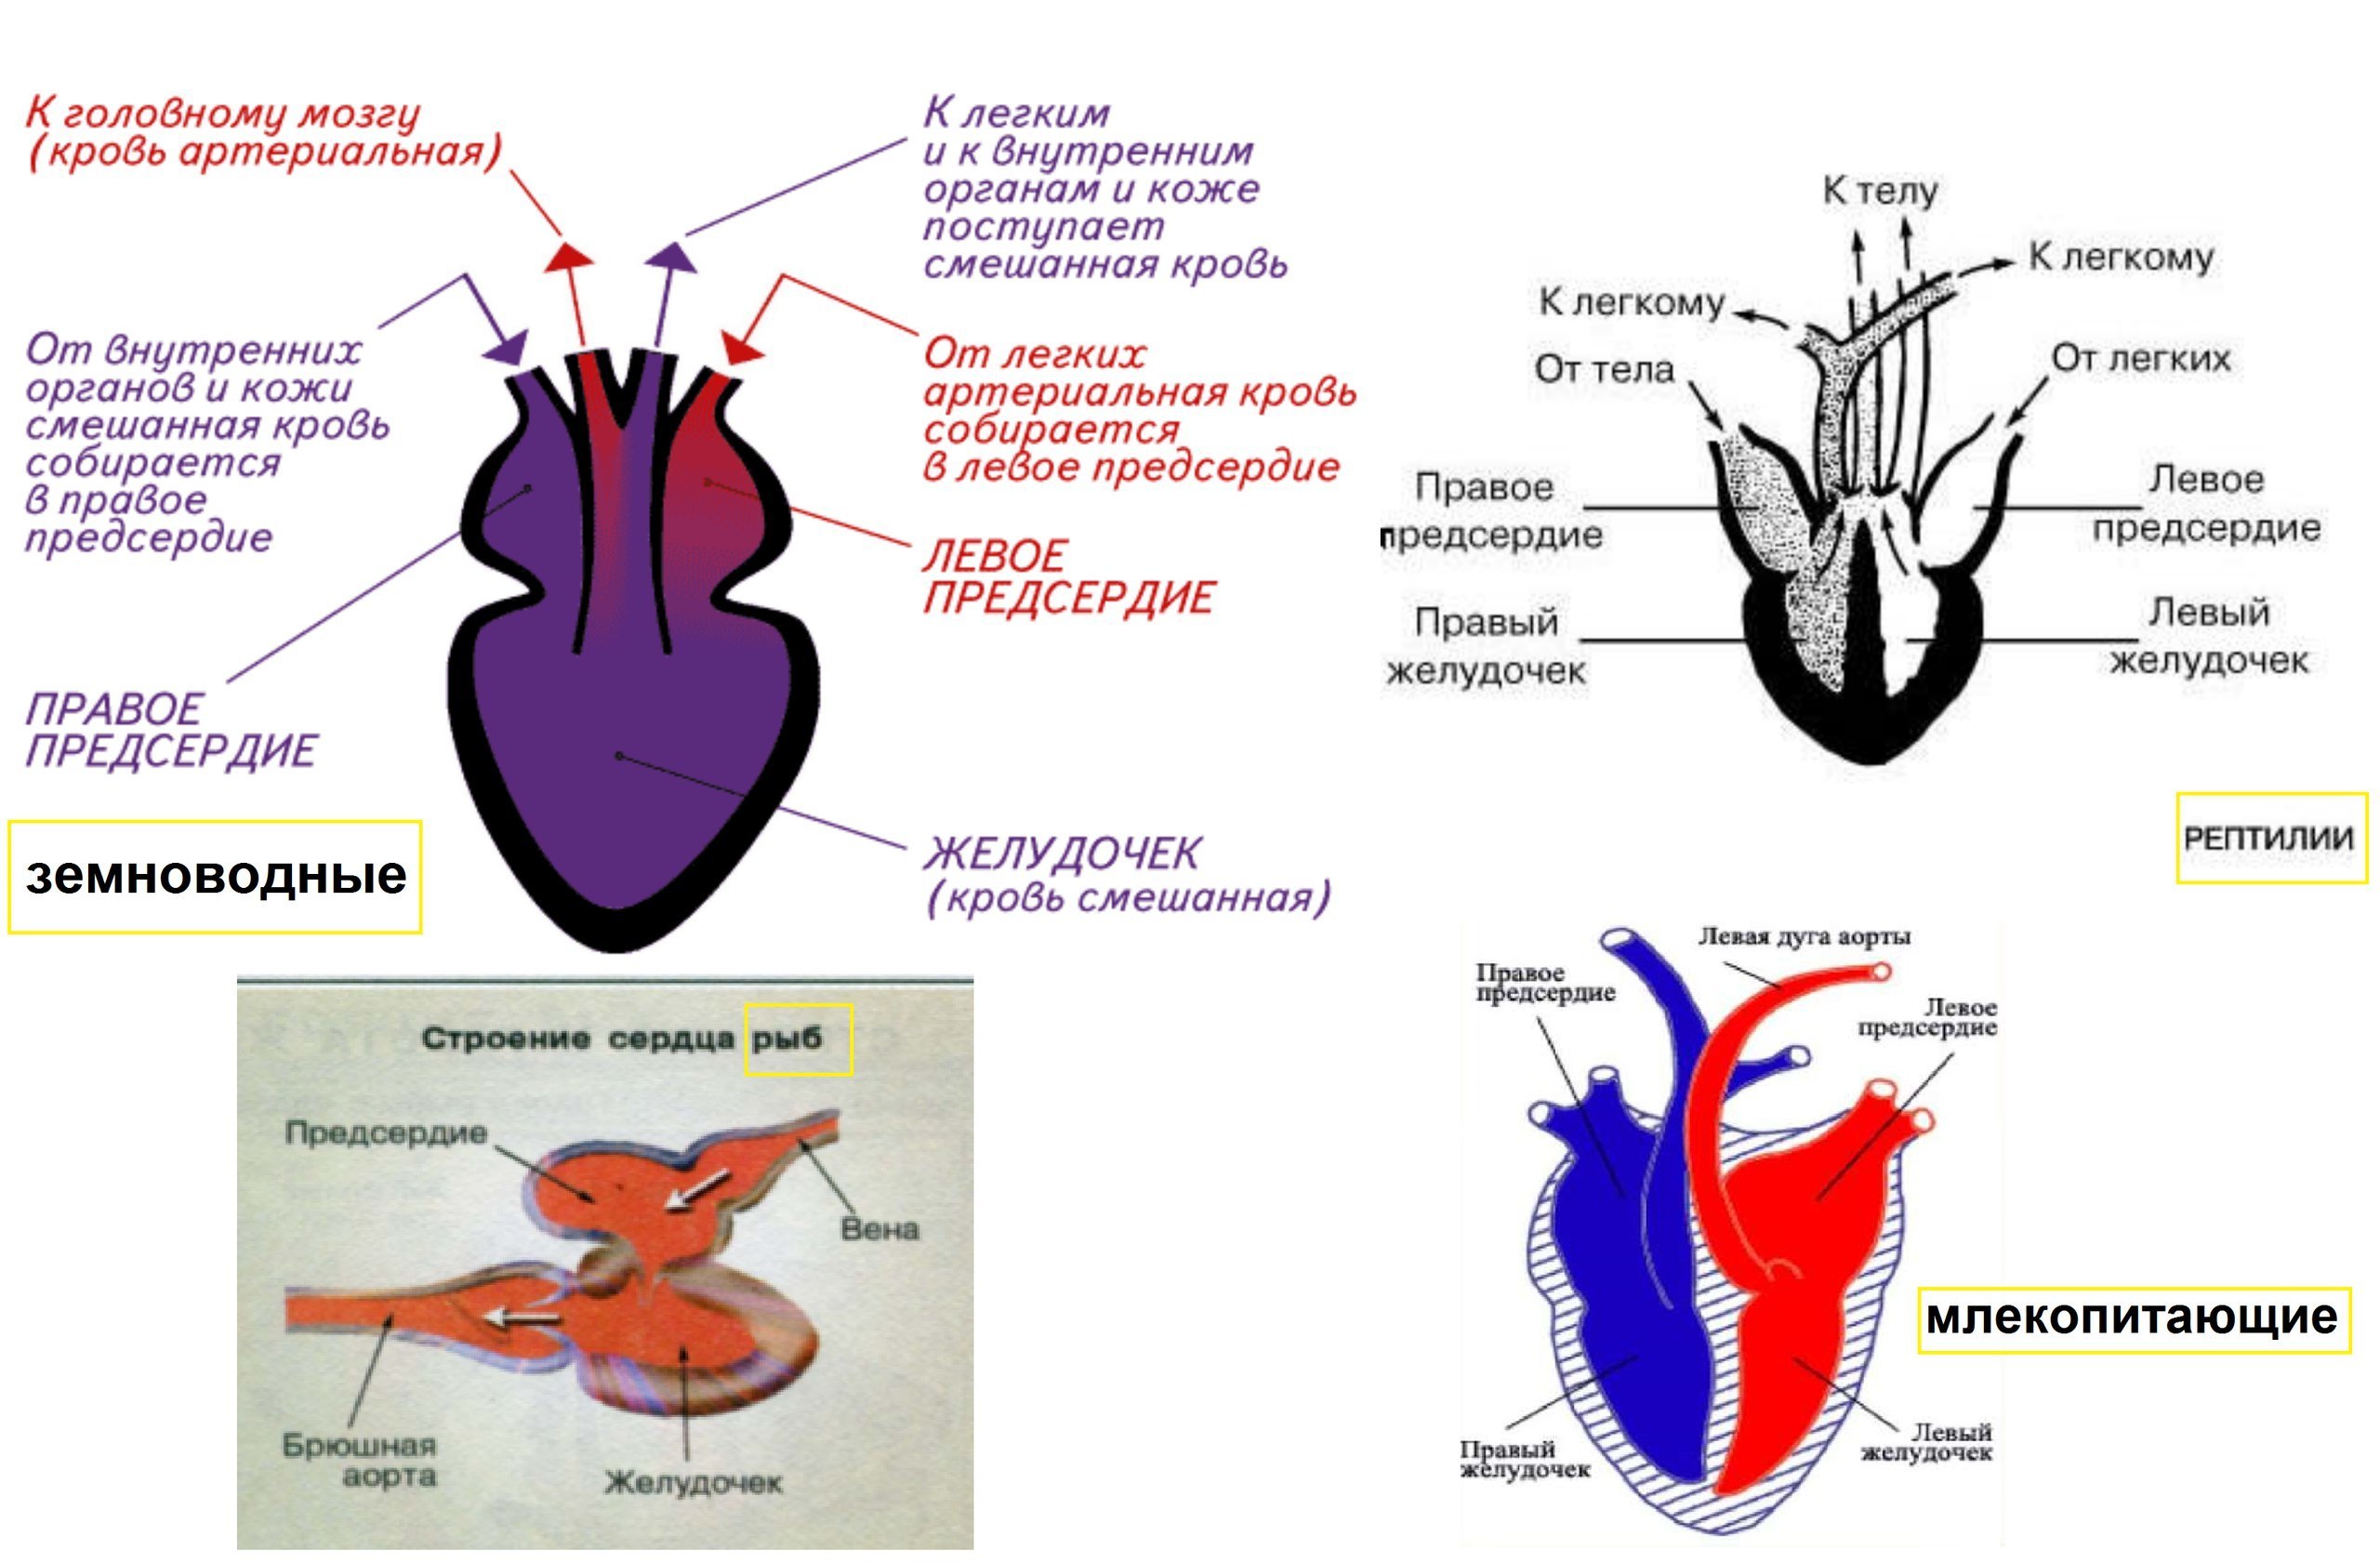 Камерное сердце у пресмыкающихся. Строение кровеносной системы амфибий схема. Схема строения кровеносной системы земноводных. Схема строения кровеносной системы позвоночных. Схема строения сердца амфибий.